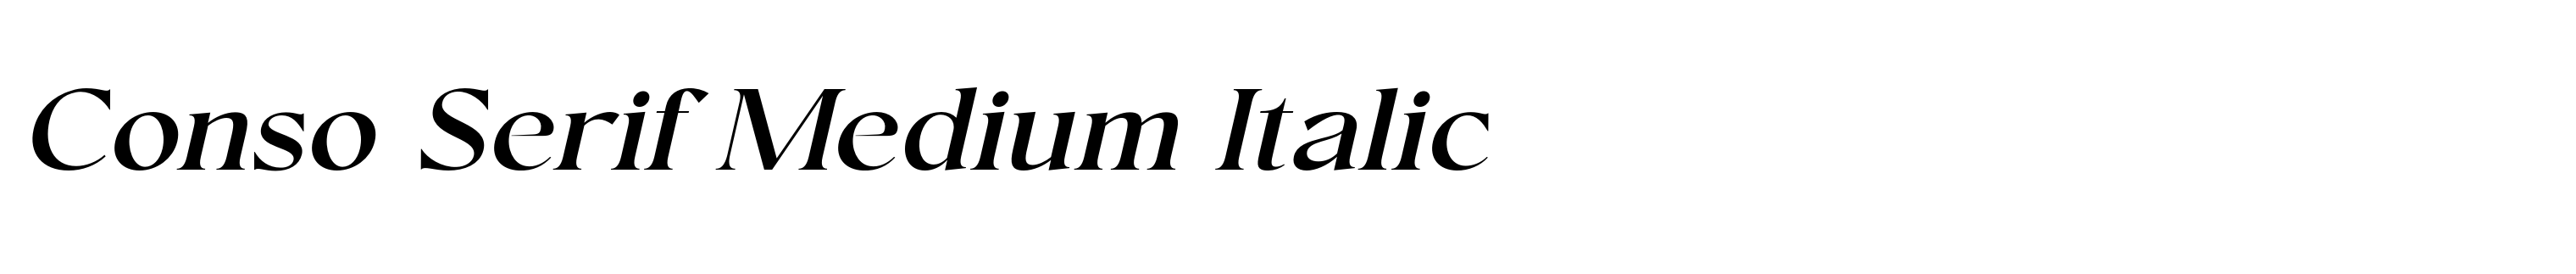 Conso Serif Medium Italic